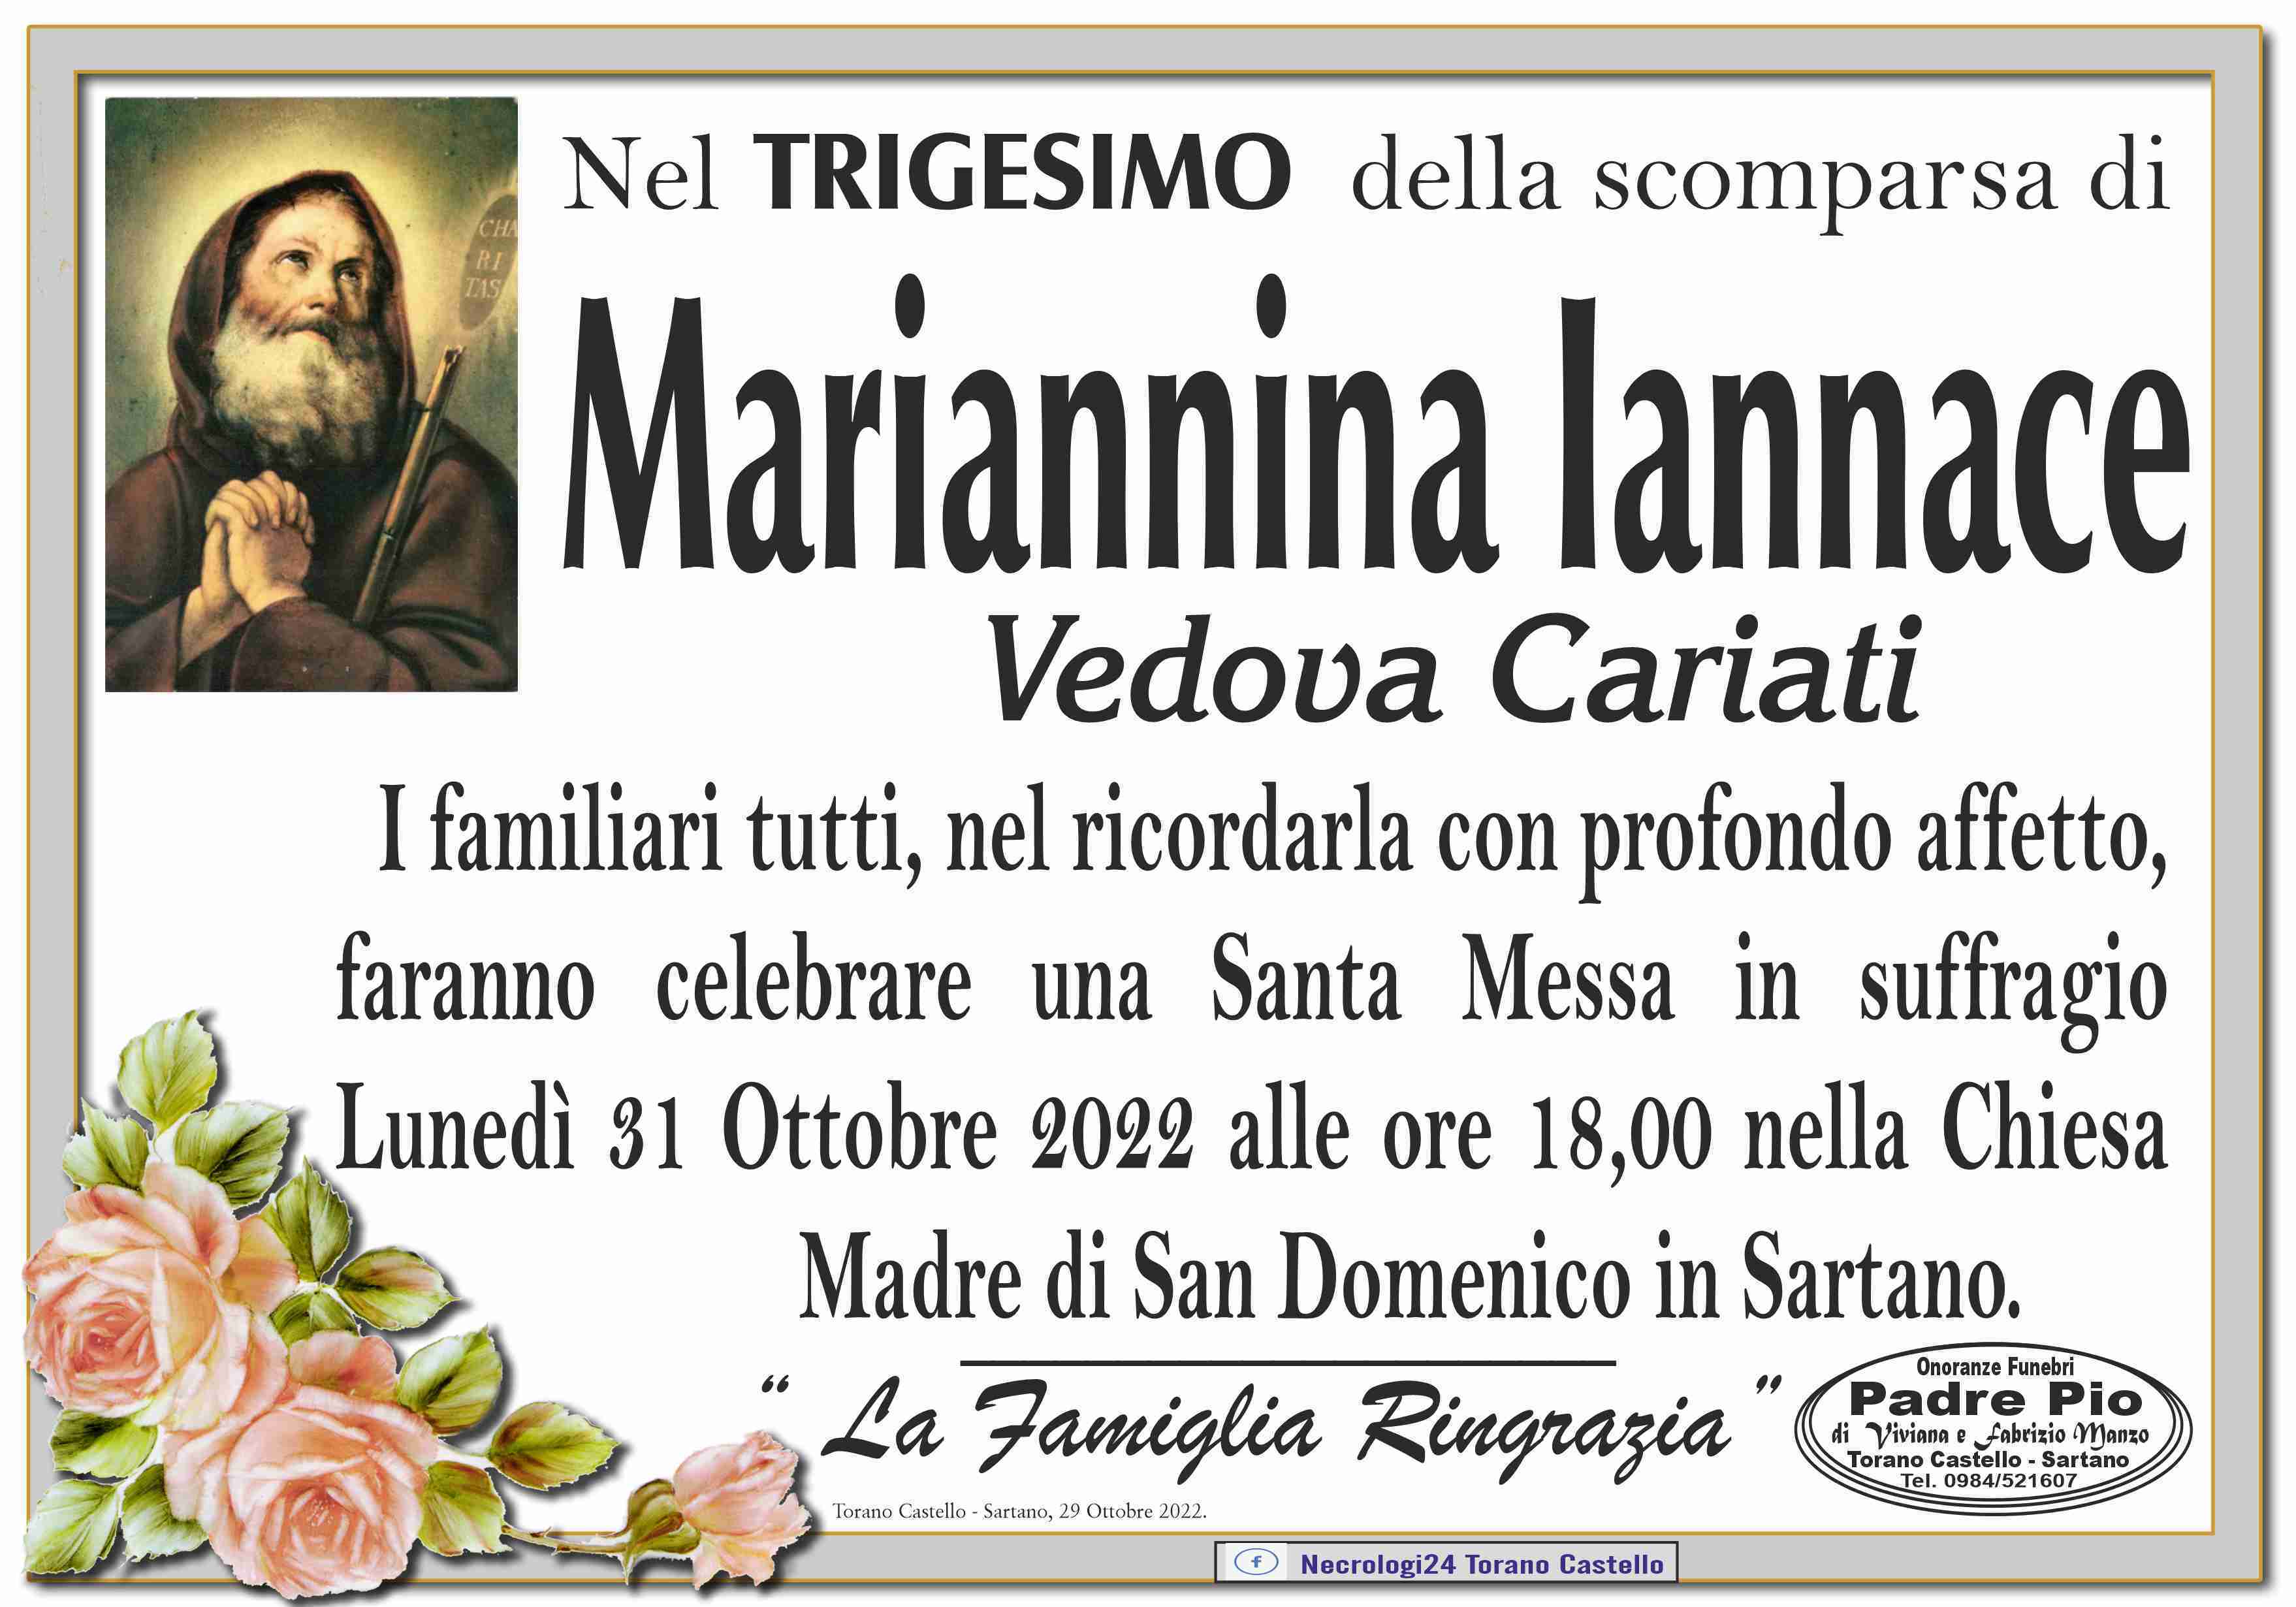 Mariannina Iannace